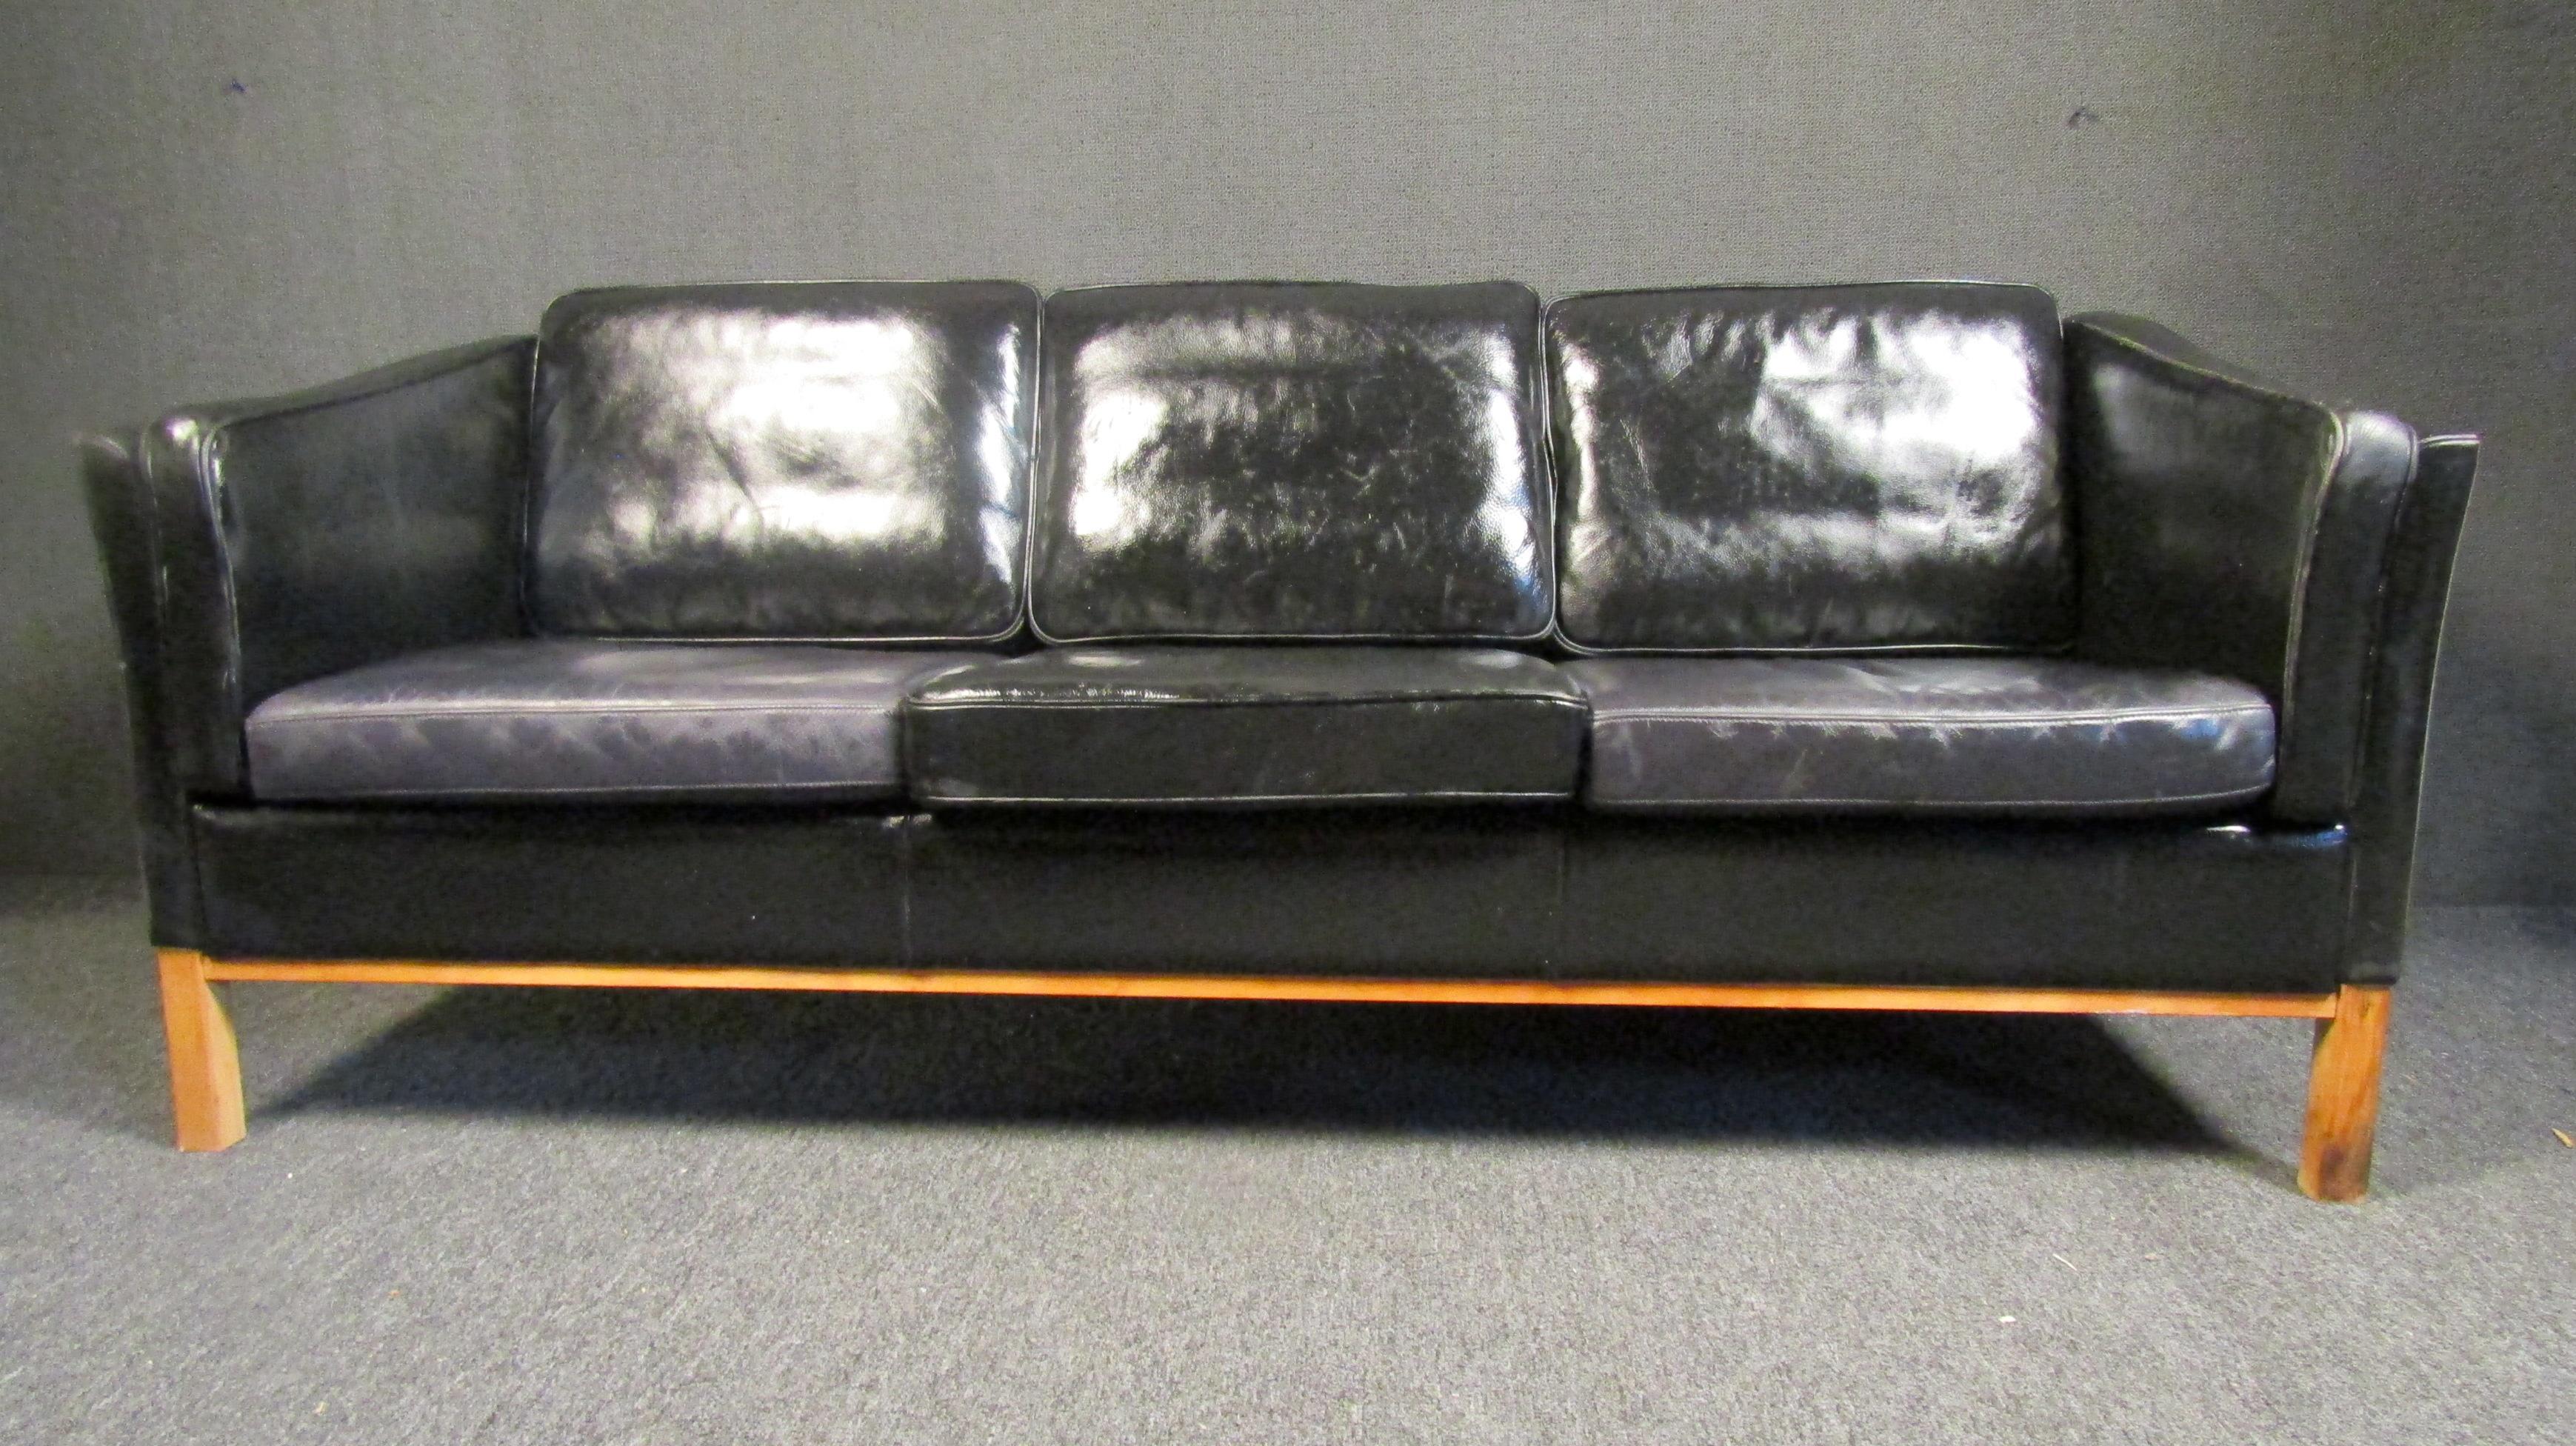 Modernes Dreisitzer-Sofa von Stouby in schwarzem Leder auf einem stabilen Holzrahmen. Dieses Sofa ist durchgehend mit bequemen Kissen ausgestattet. 

Bitte bestätigen Sie den Standort des Artikels beim Händler. (NJ/NY).